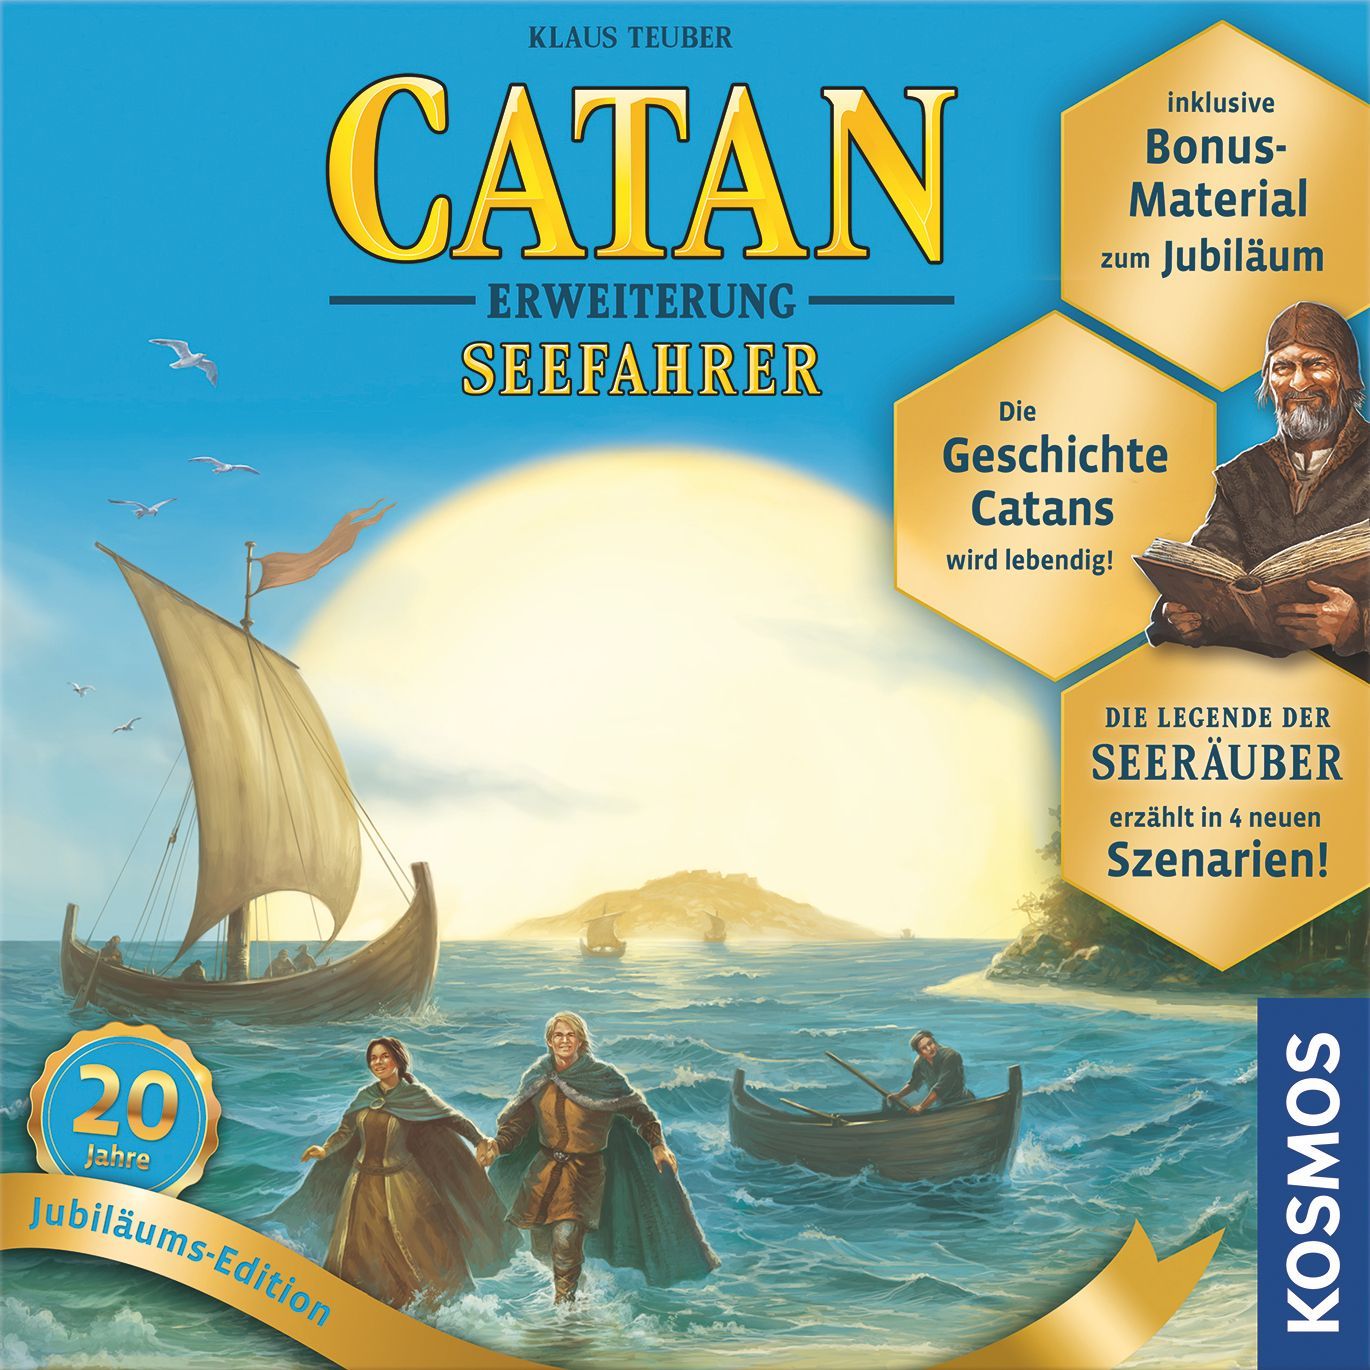 Catan: Seefahrer – 20 Jahre Jubiläums-Edition